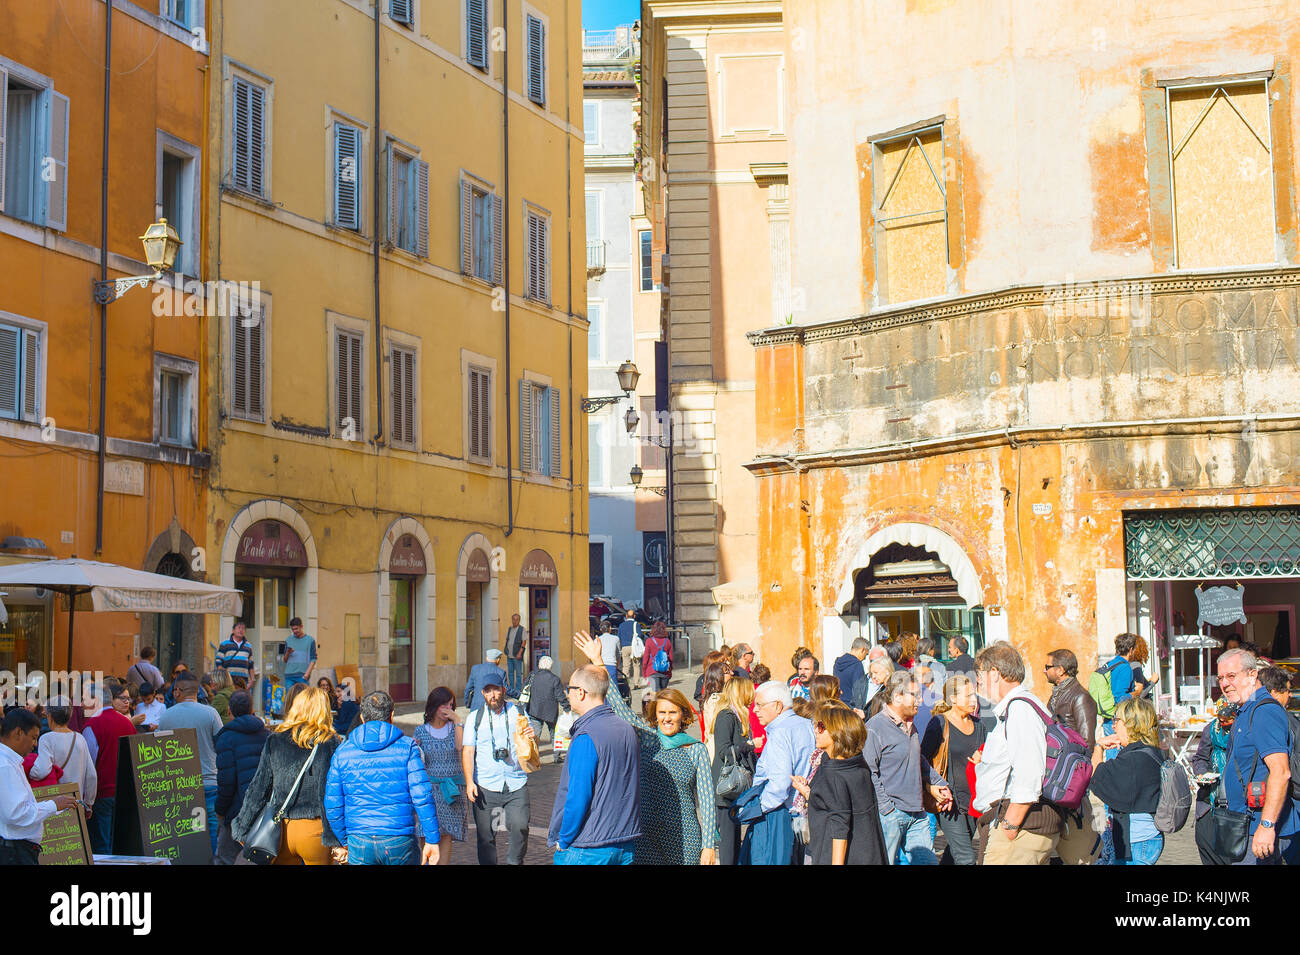 Rome, Italie - nov 01, 2016 : les gens marcher sur rue de la vieille ville de Rome. Rome est la 3ème ville la plus visitée de l'UE, après Londres et Paris, et réc Banque D'Images